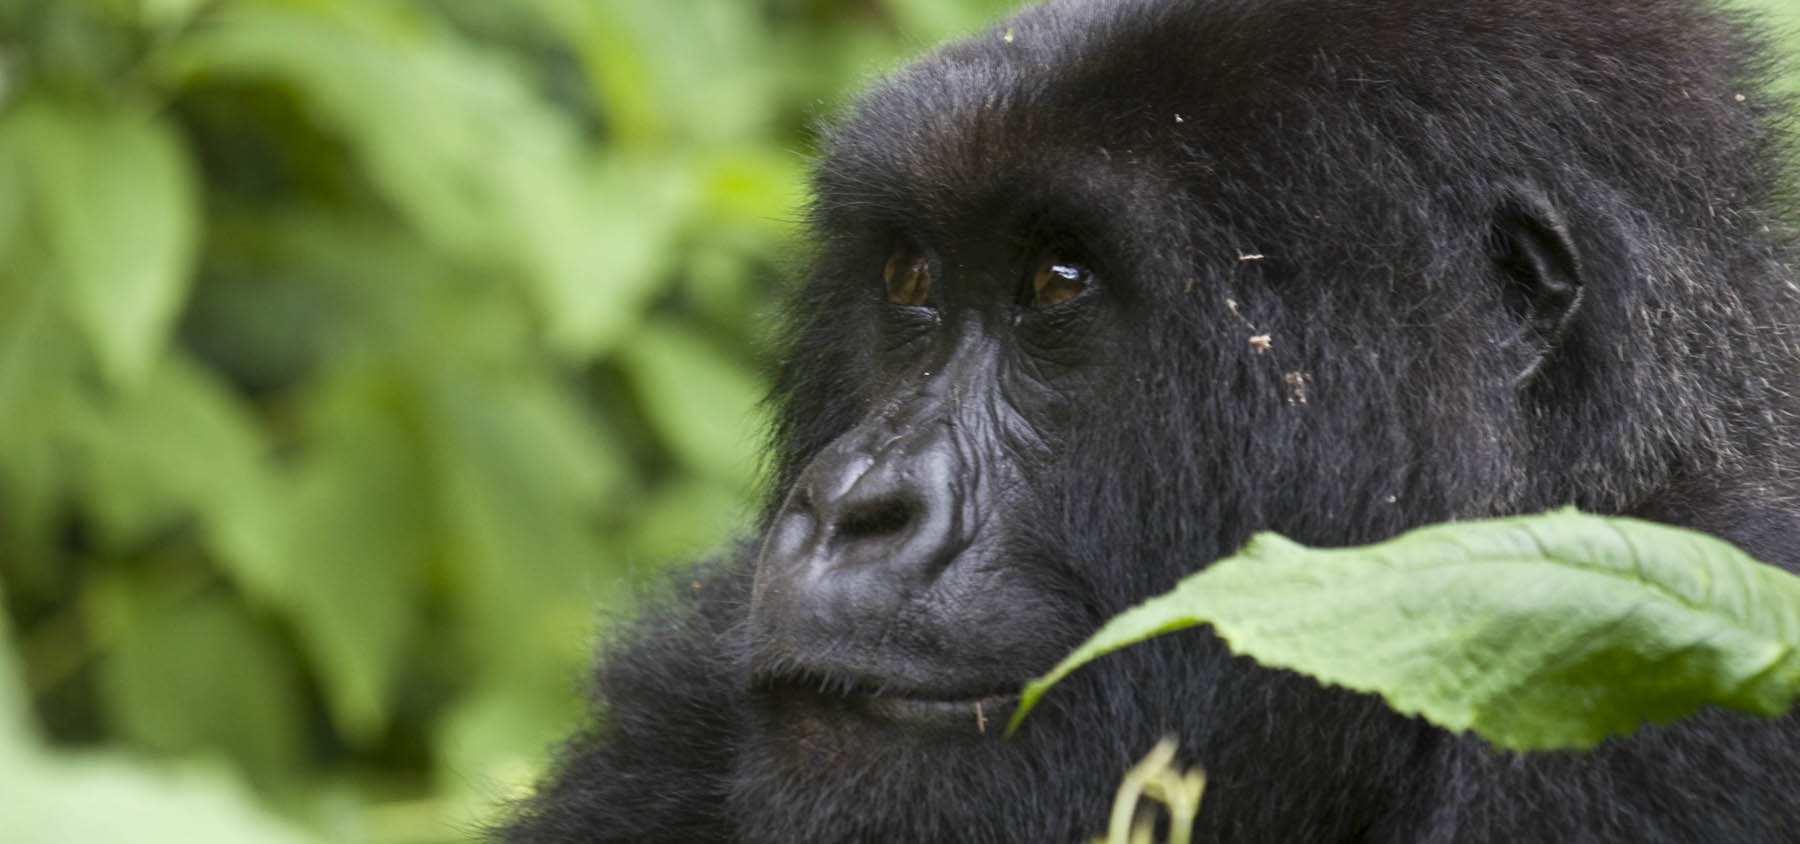 Uganda Gorilla trekking safari 2022